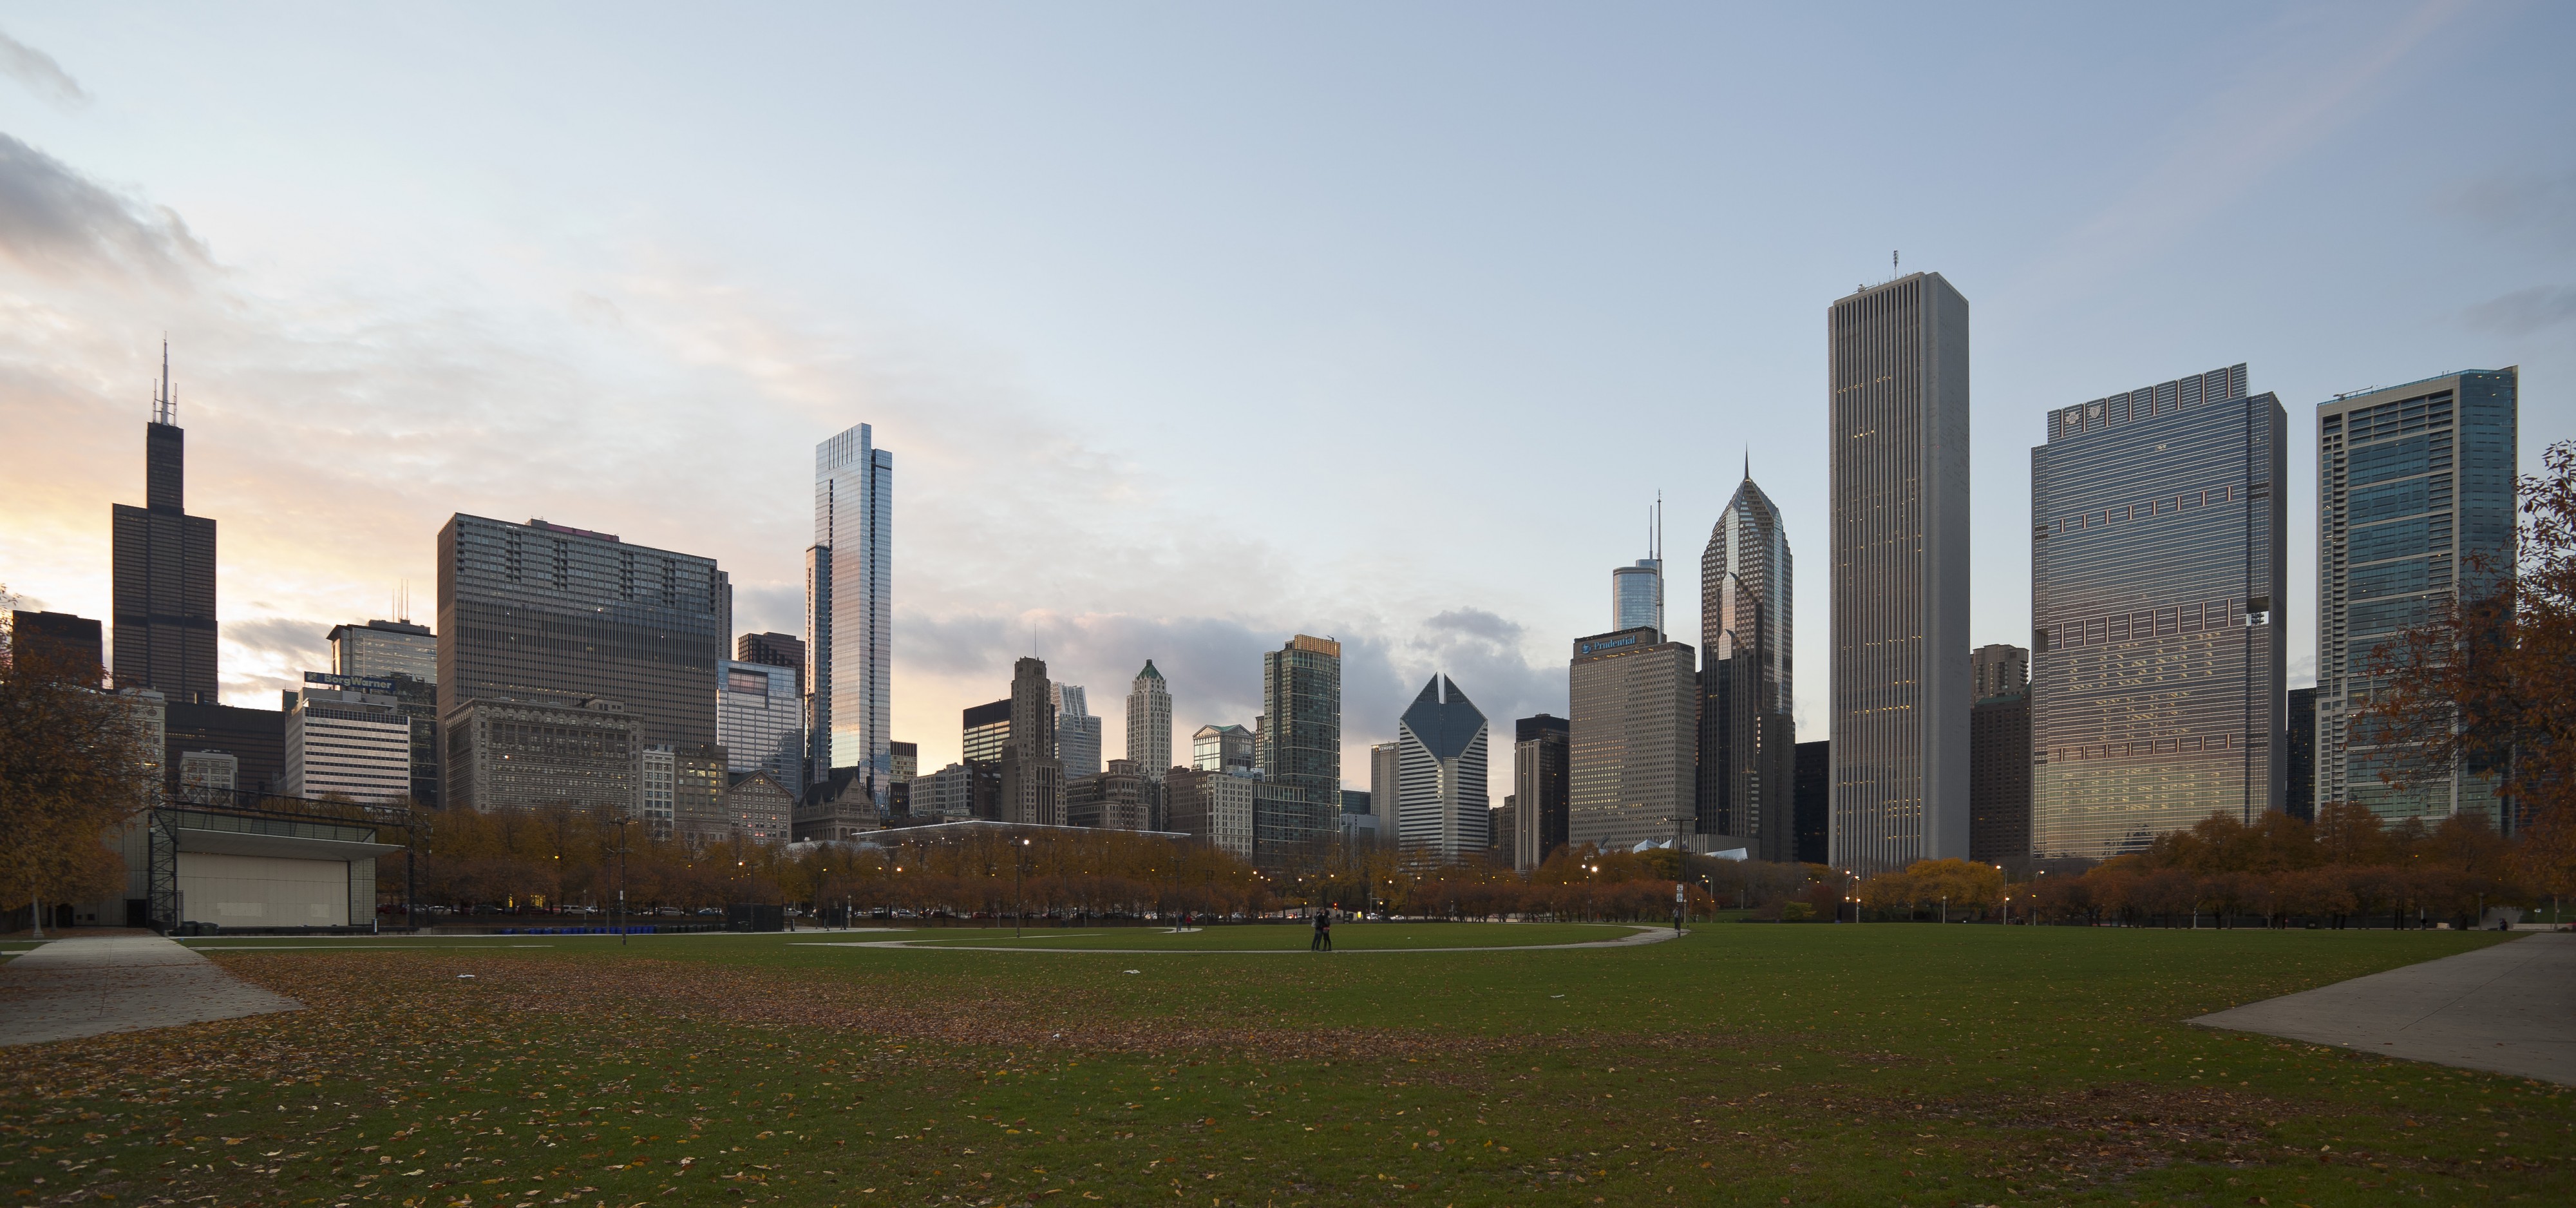 Skyline de Chicago desde el centro, Illinois, Estados Unidos, 2012-10-20, DD 05